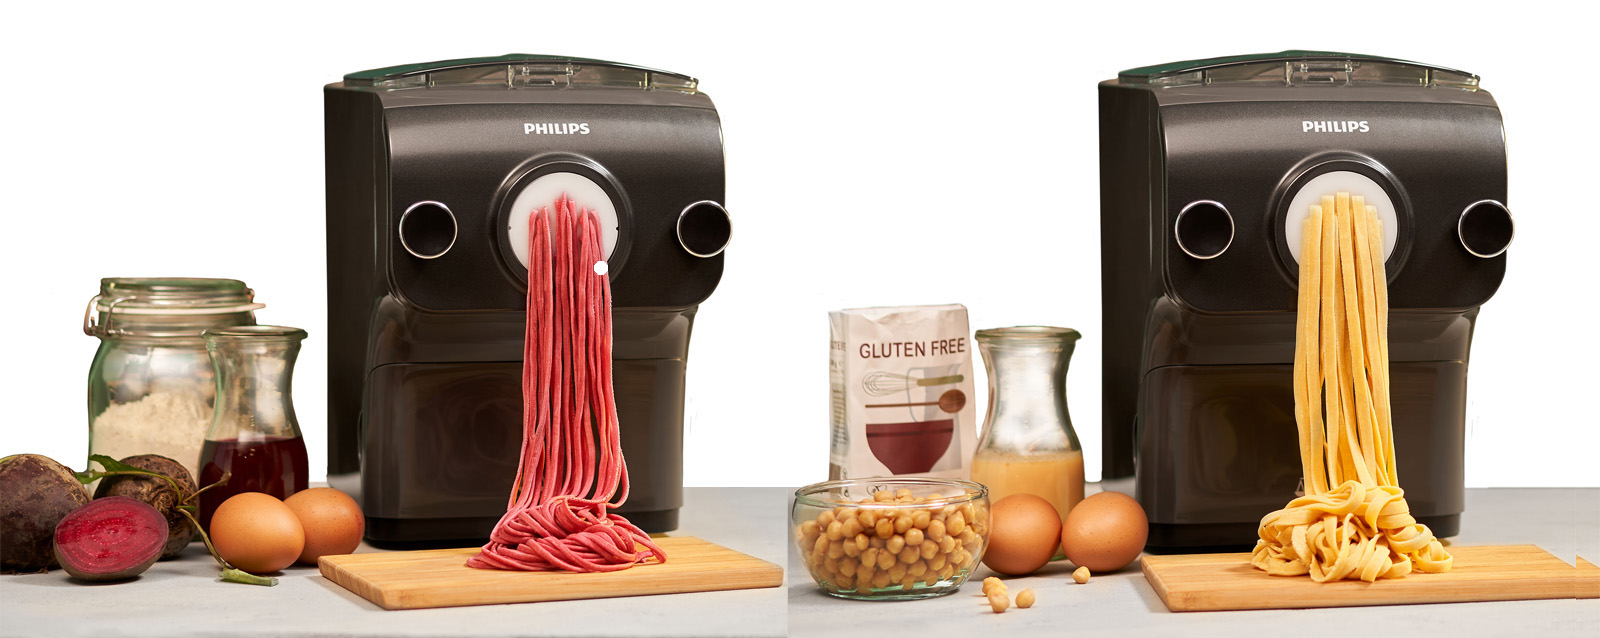 Philips Pasta Maker HR2382 Automatic Electric Noodle Ramen Udon